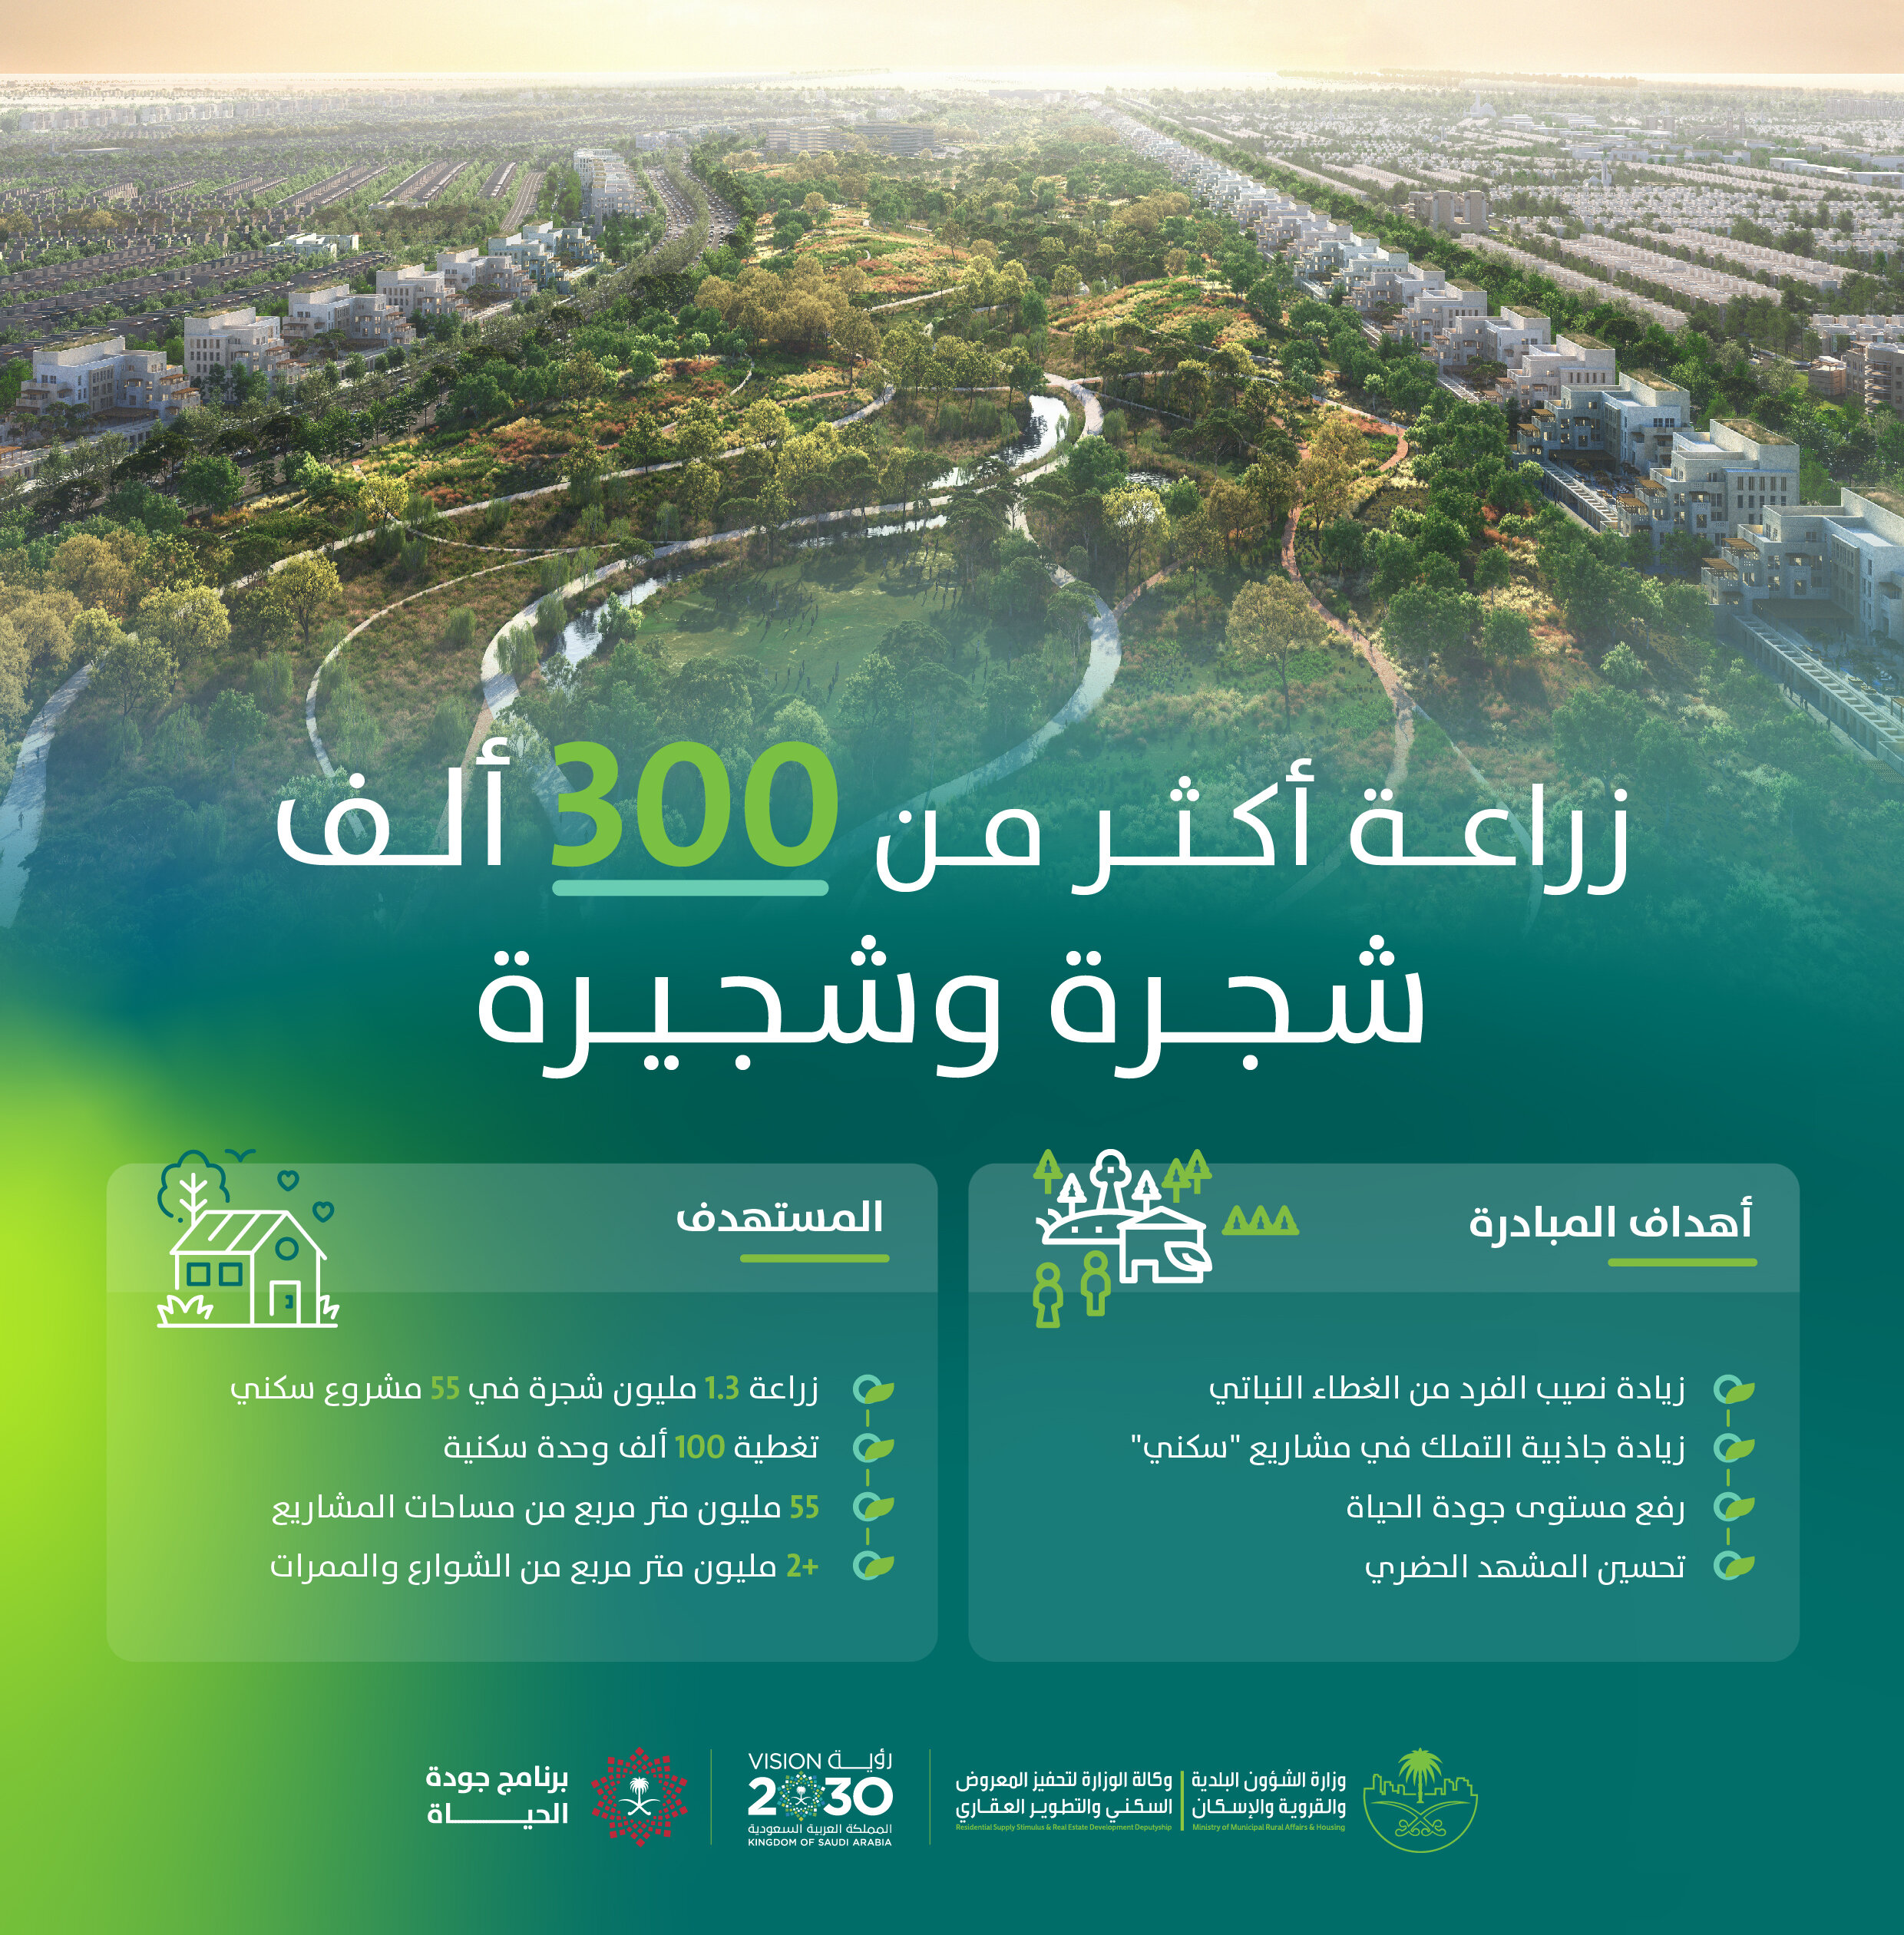 "البلدية والإسكان" تُنهي زراعة أكثر من 300 ألف شجرة في 7 مشاريع سكنية ضمن مبادرة "الضواحي الخضراء"